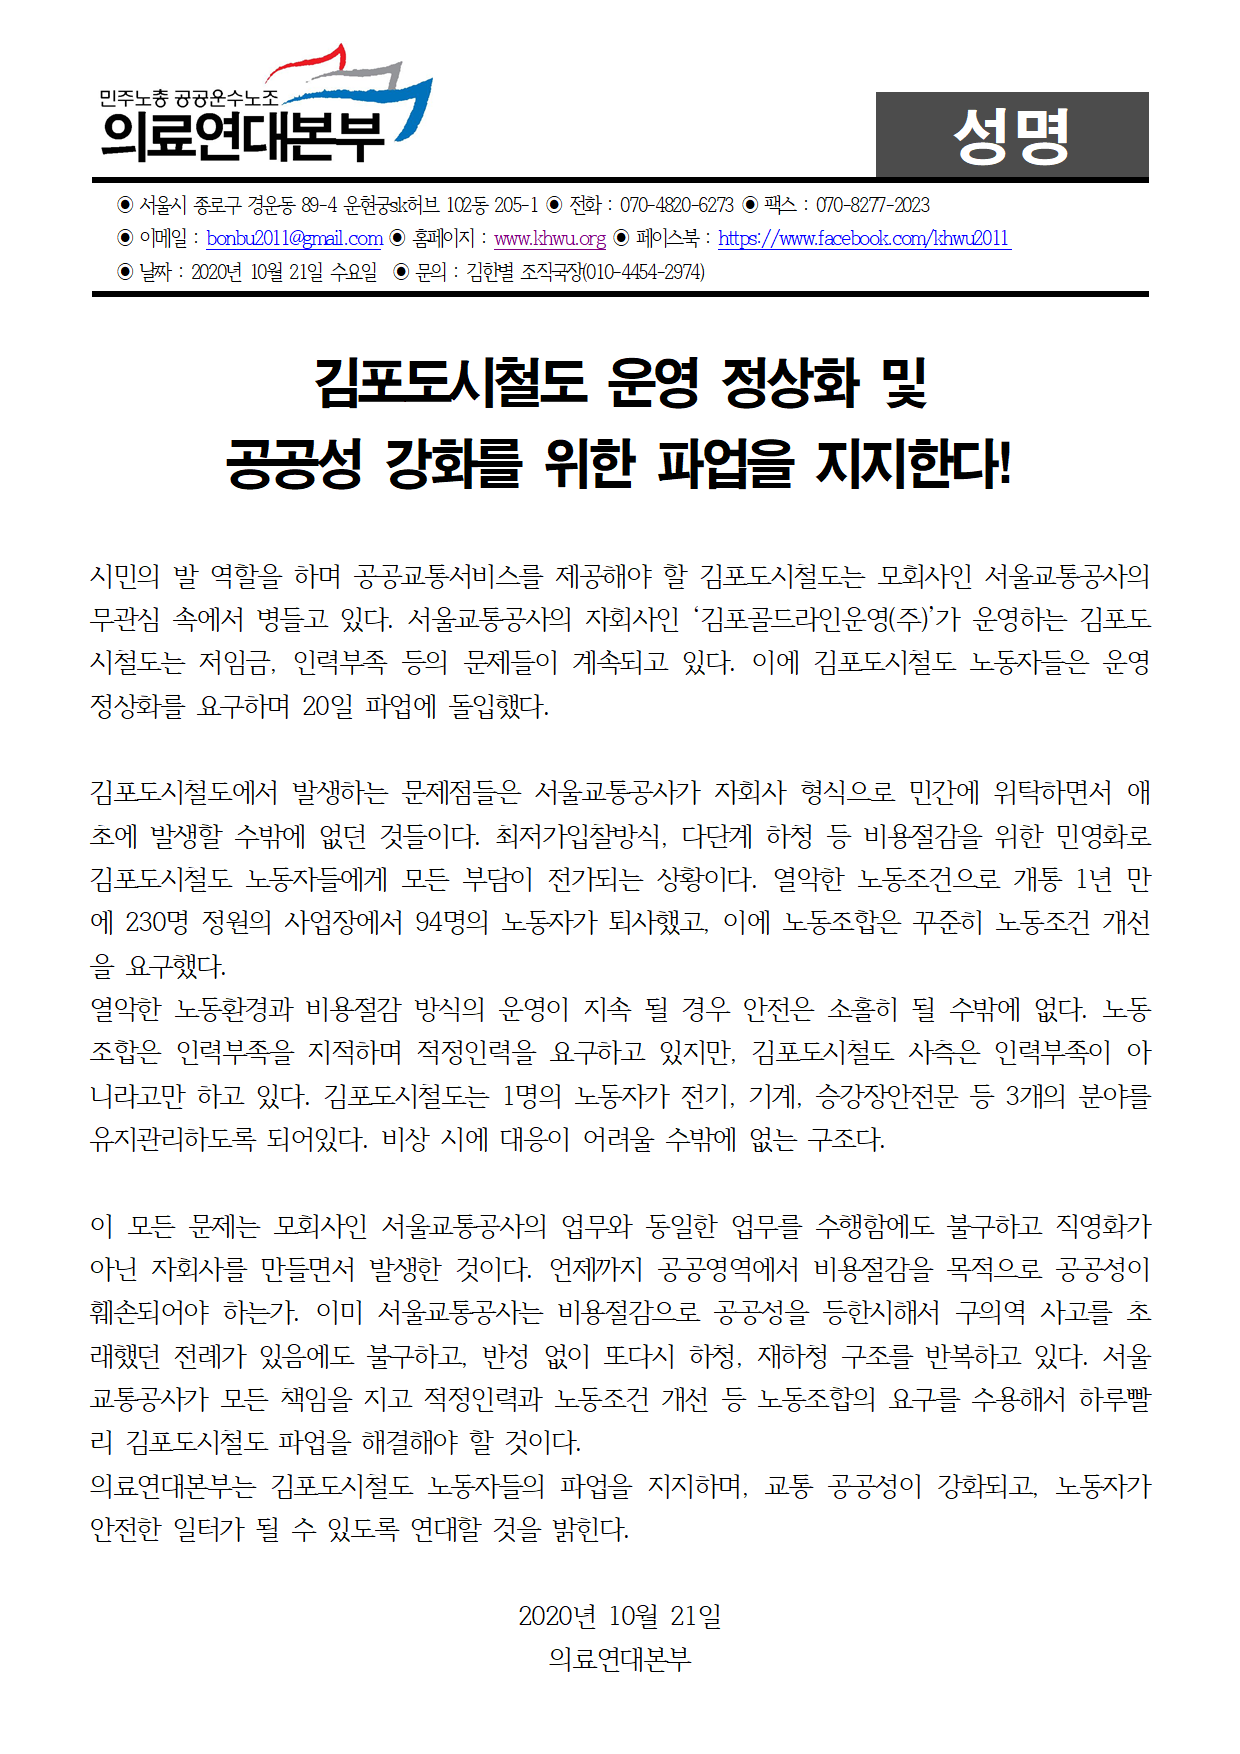 20201021 [성명] 김포도시철도 파업 지지한다.png